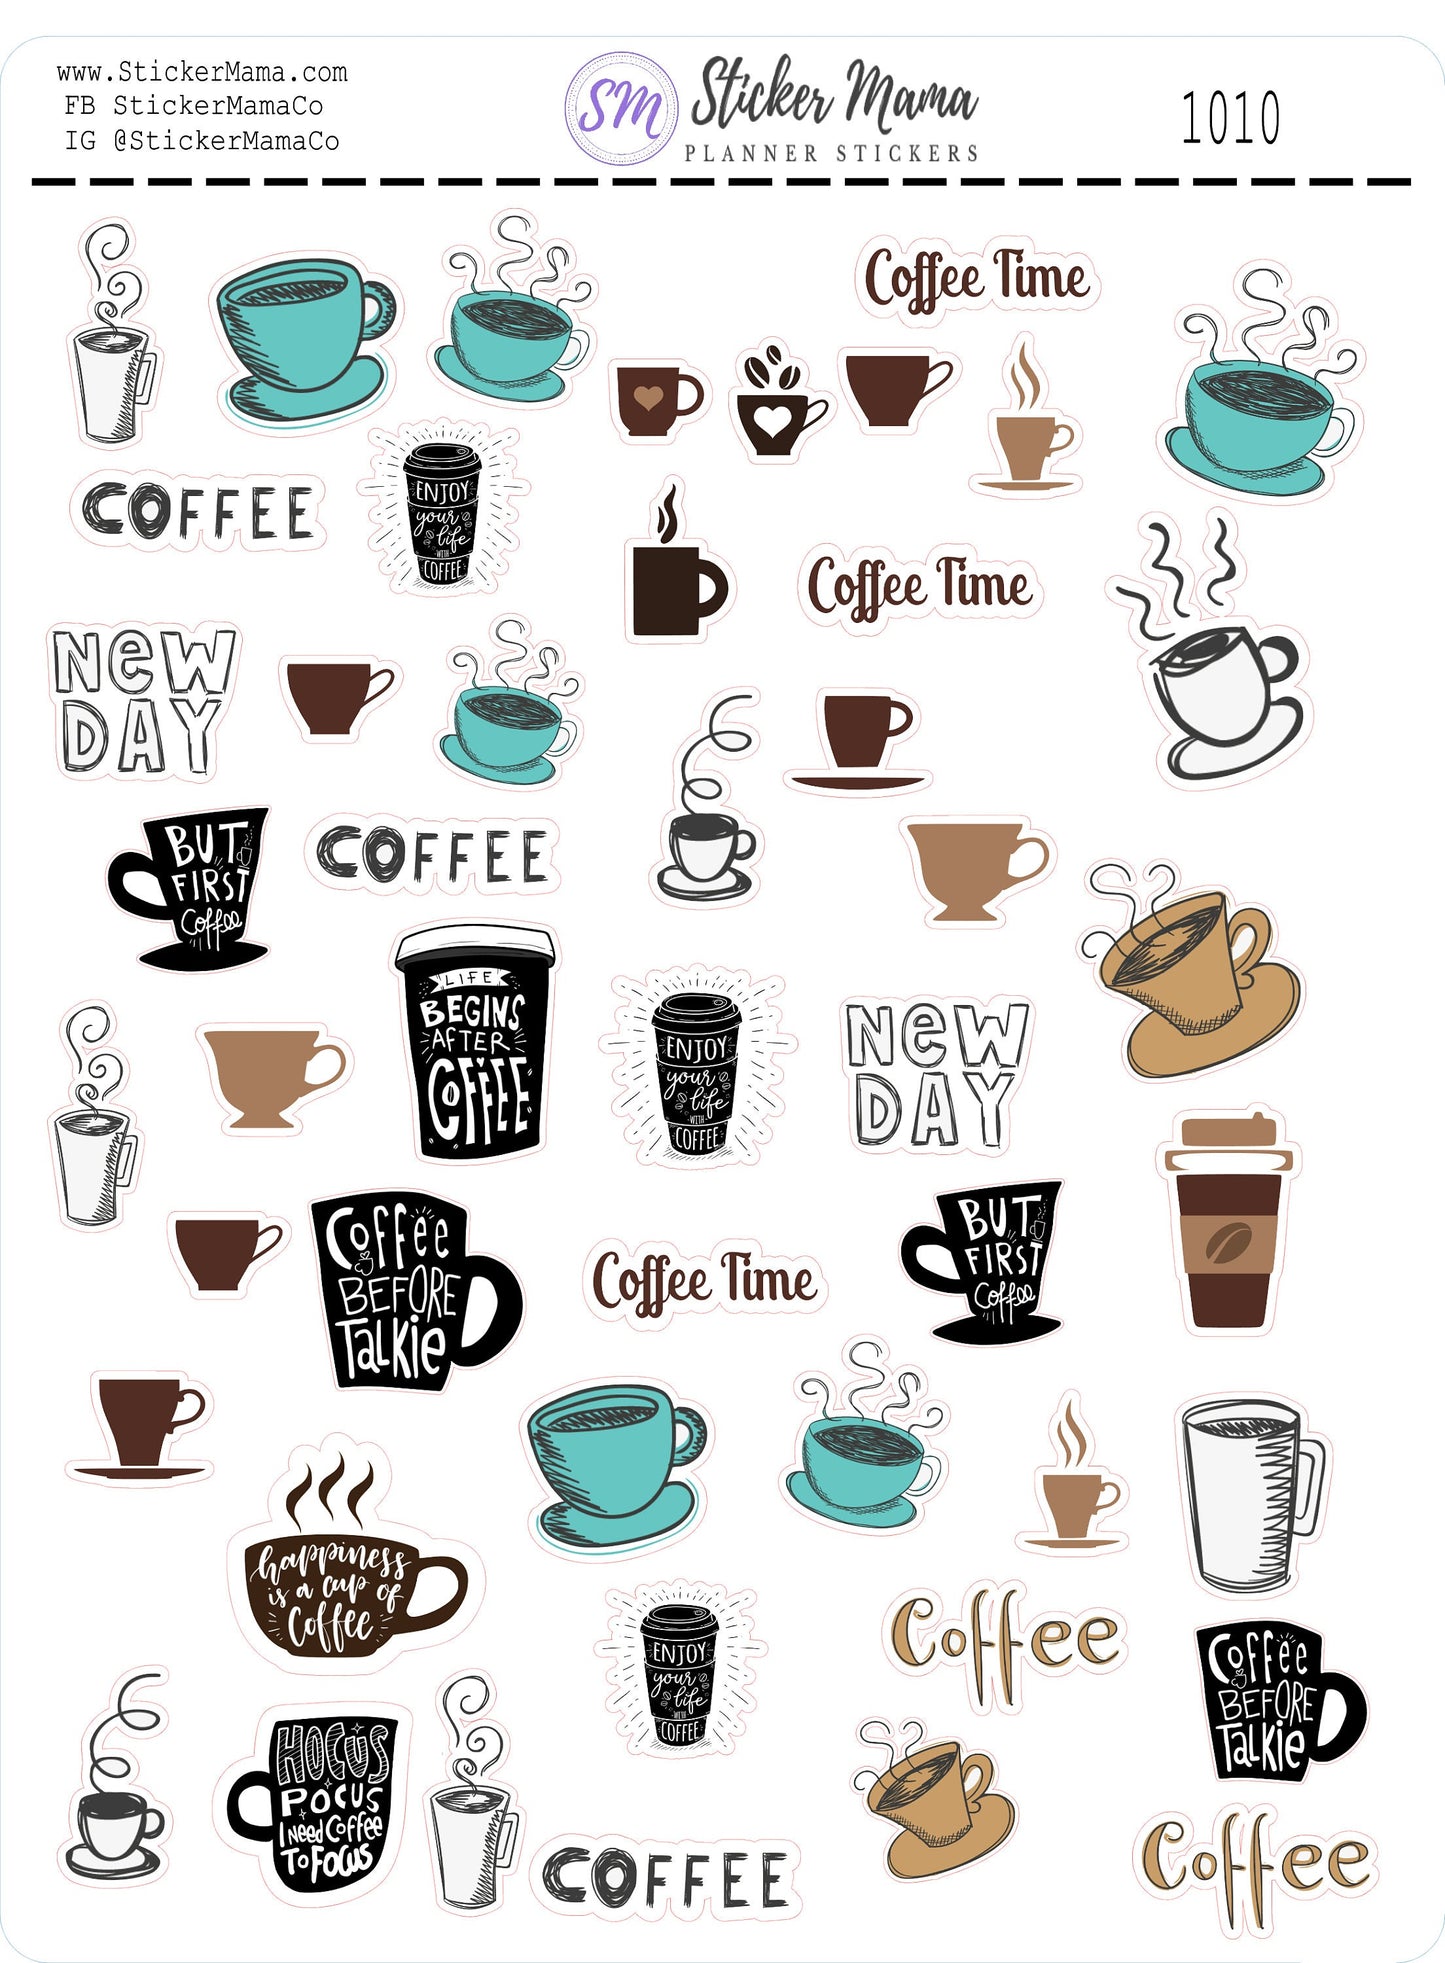 1010 COFFEE PLANNER STICKERS - Coffee Stickers - Coffee Lover - Stickers for Coffee Lovers